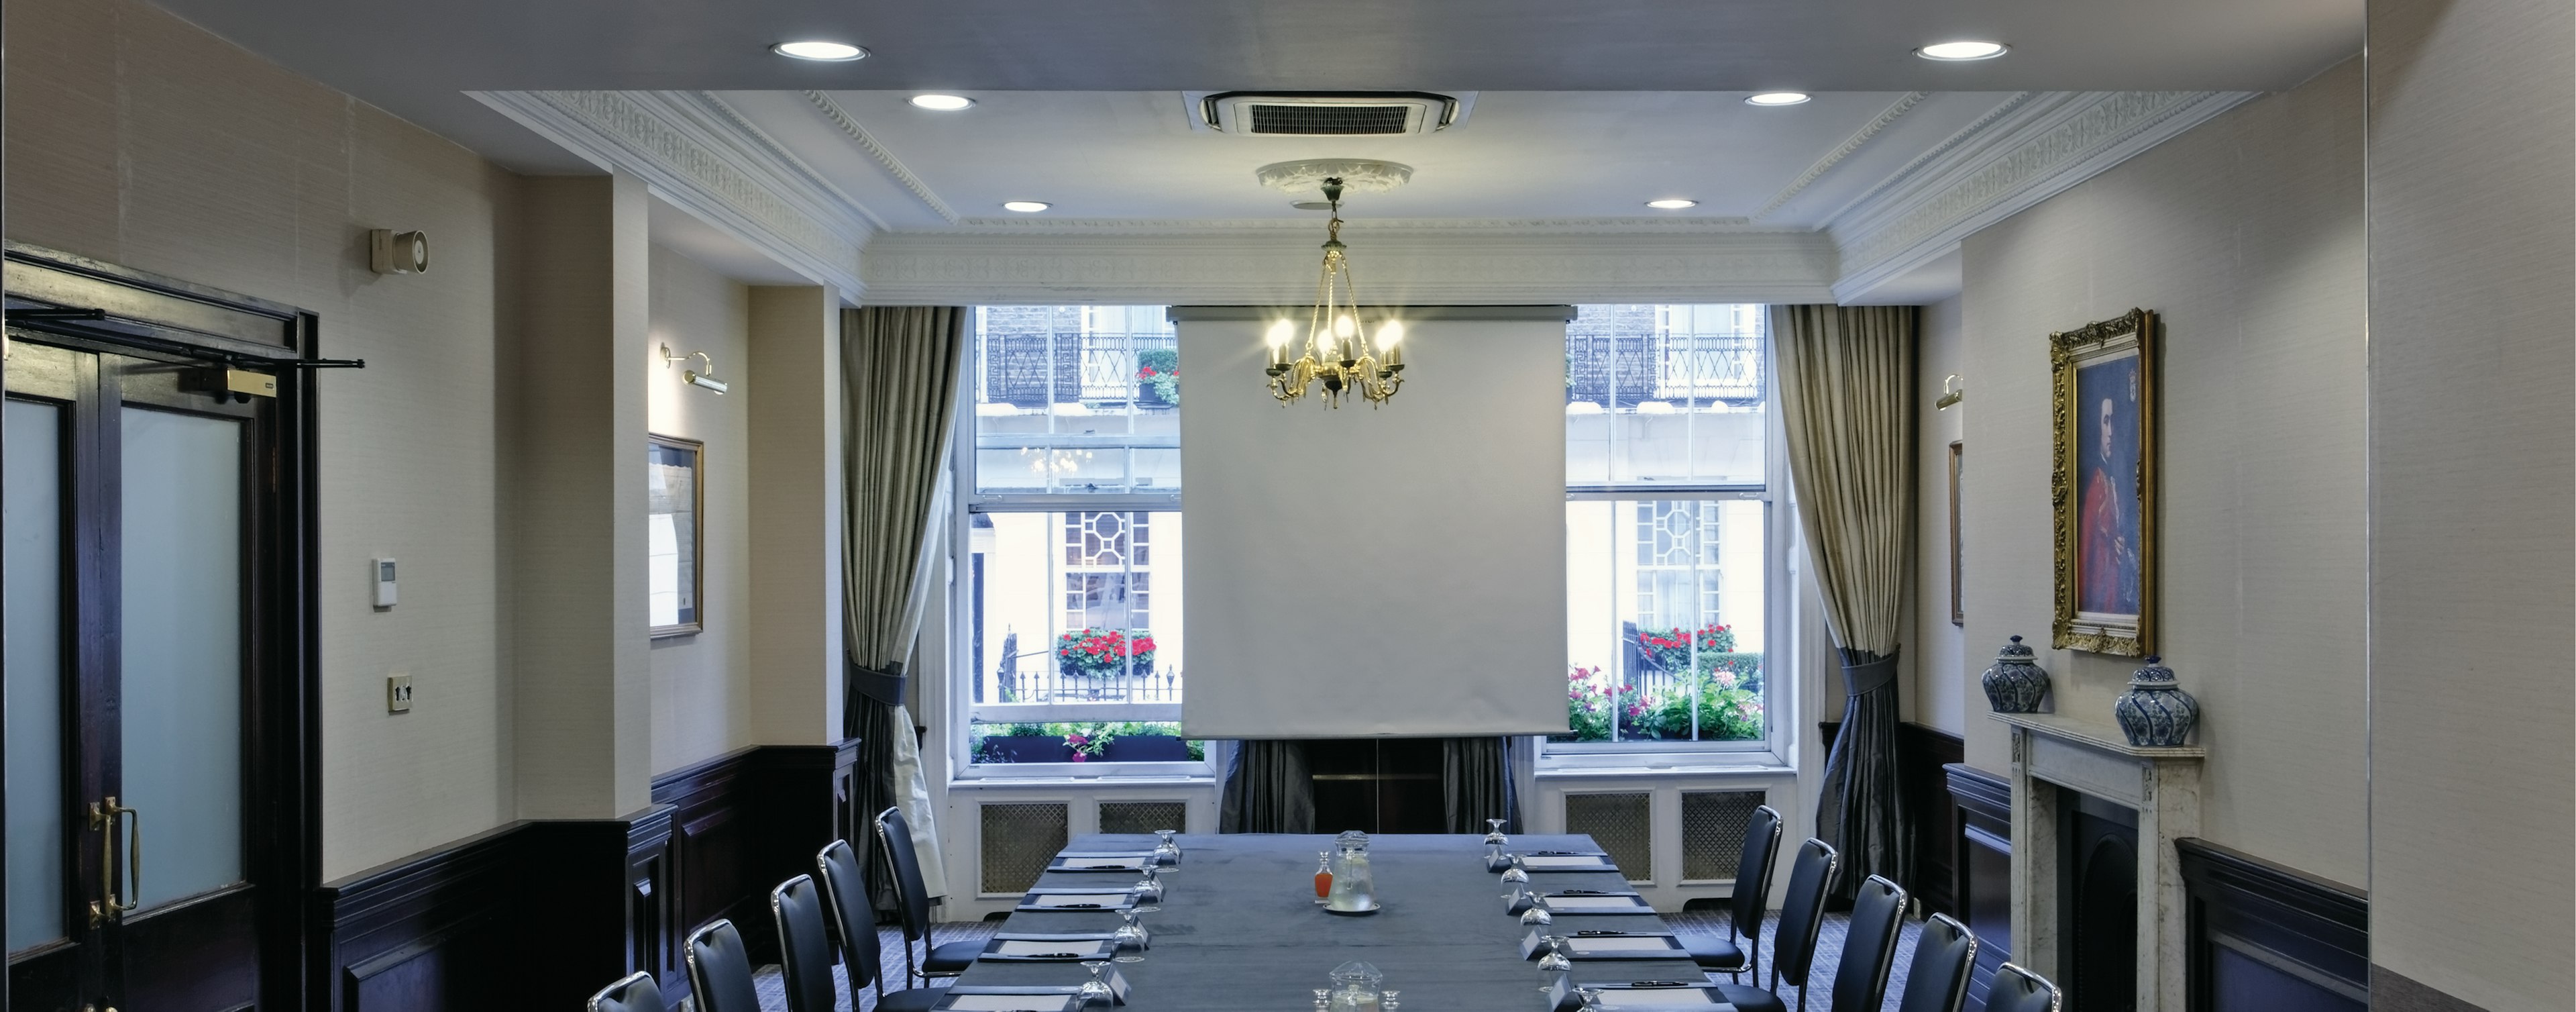 Grange White Hall Hotel_Villiers Suite Meeting.jpg